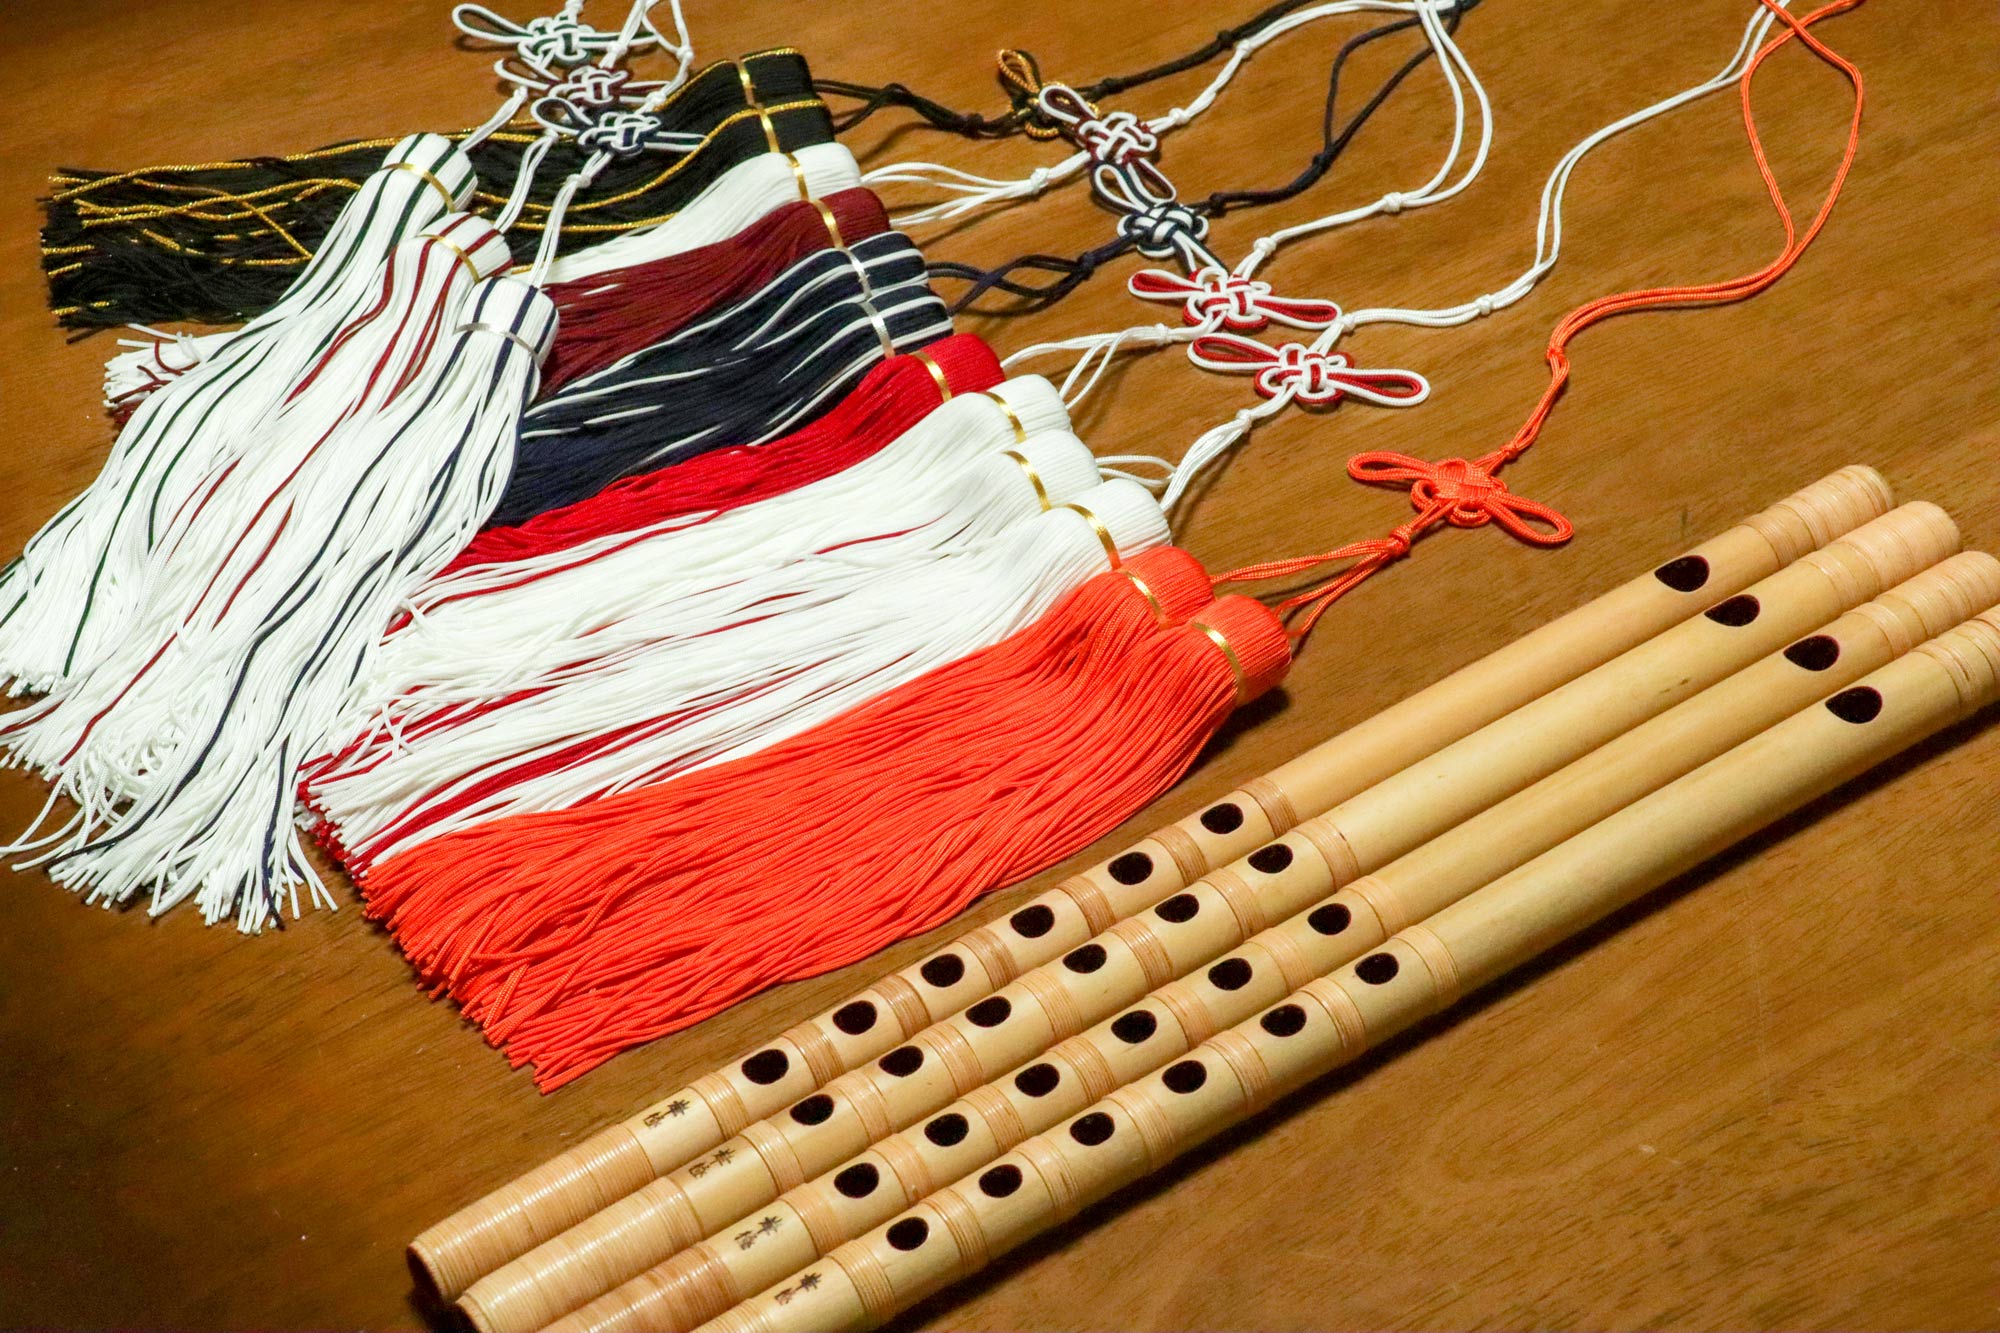 1200円 【72%OFF!】 神楽笛 竹製篠笛 7穴 六本調子 伝統的な楽器 竹笛横笛 お囃子